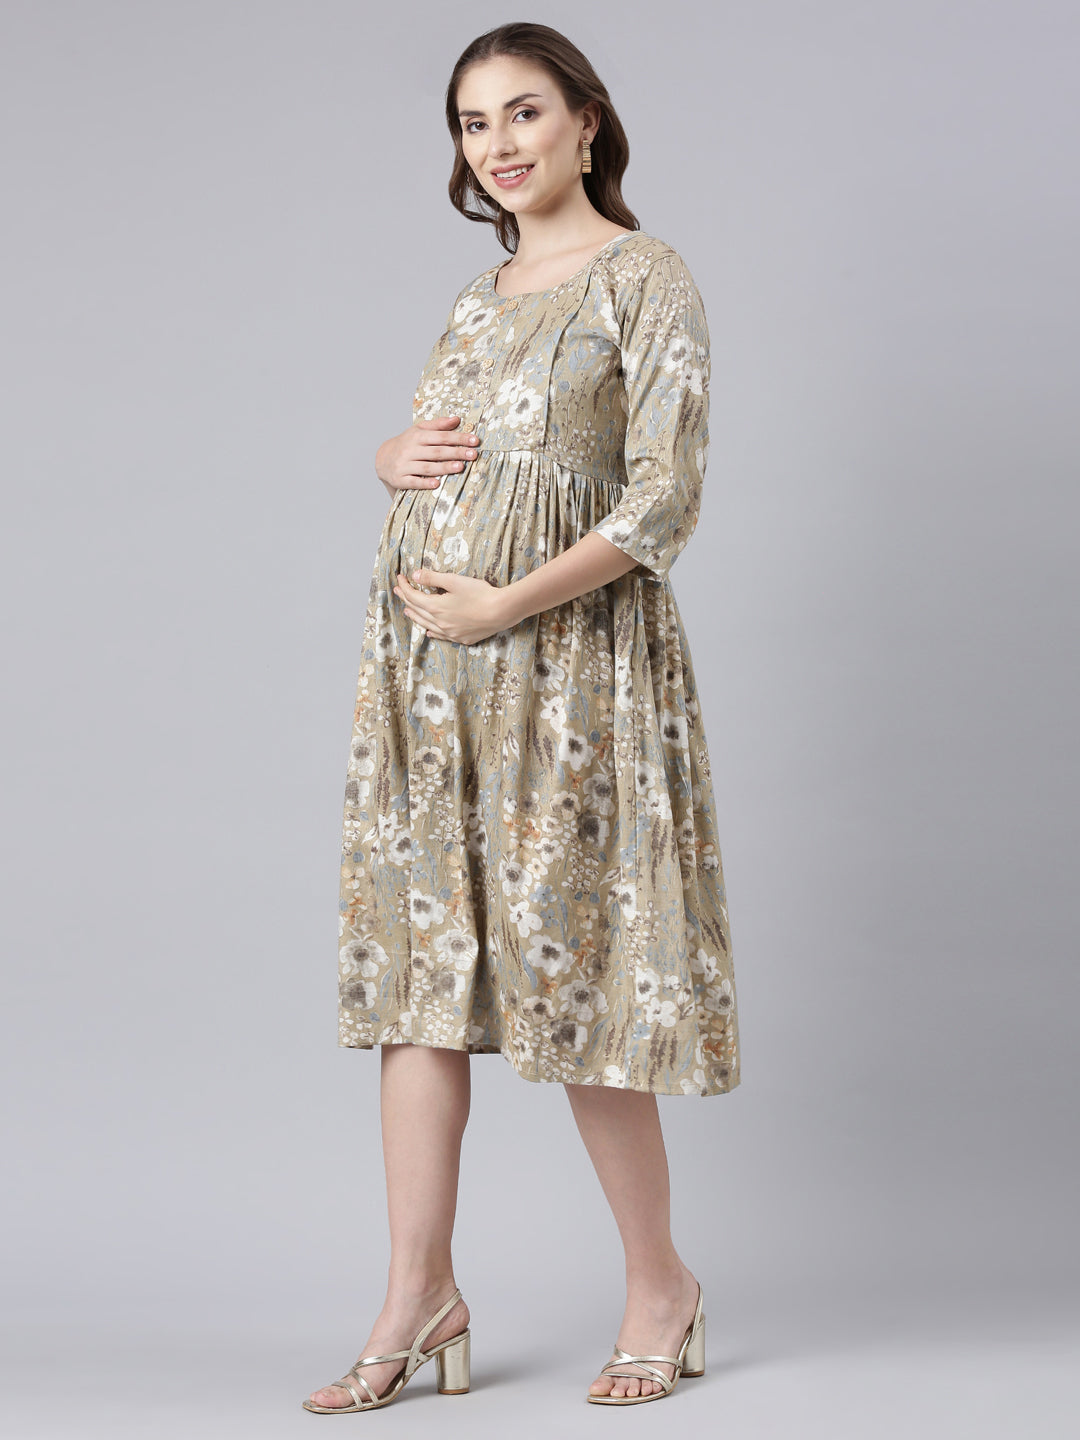 Daisy Green maternity and feeding dress